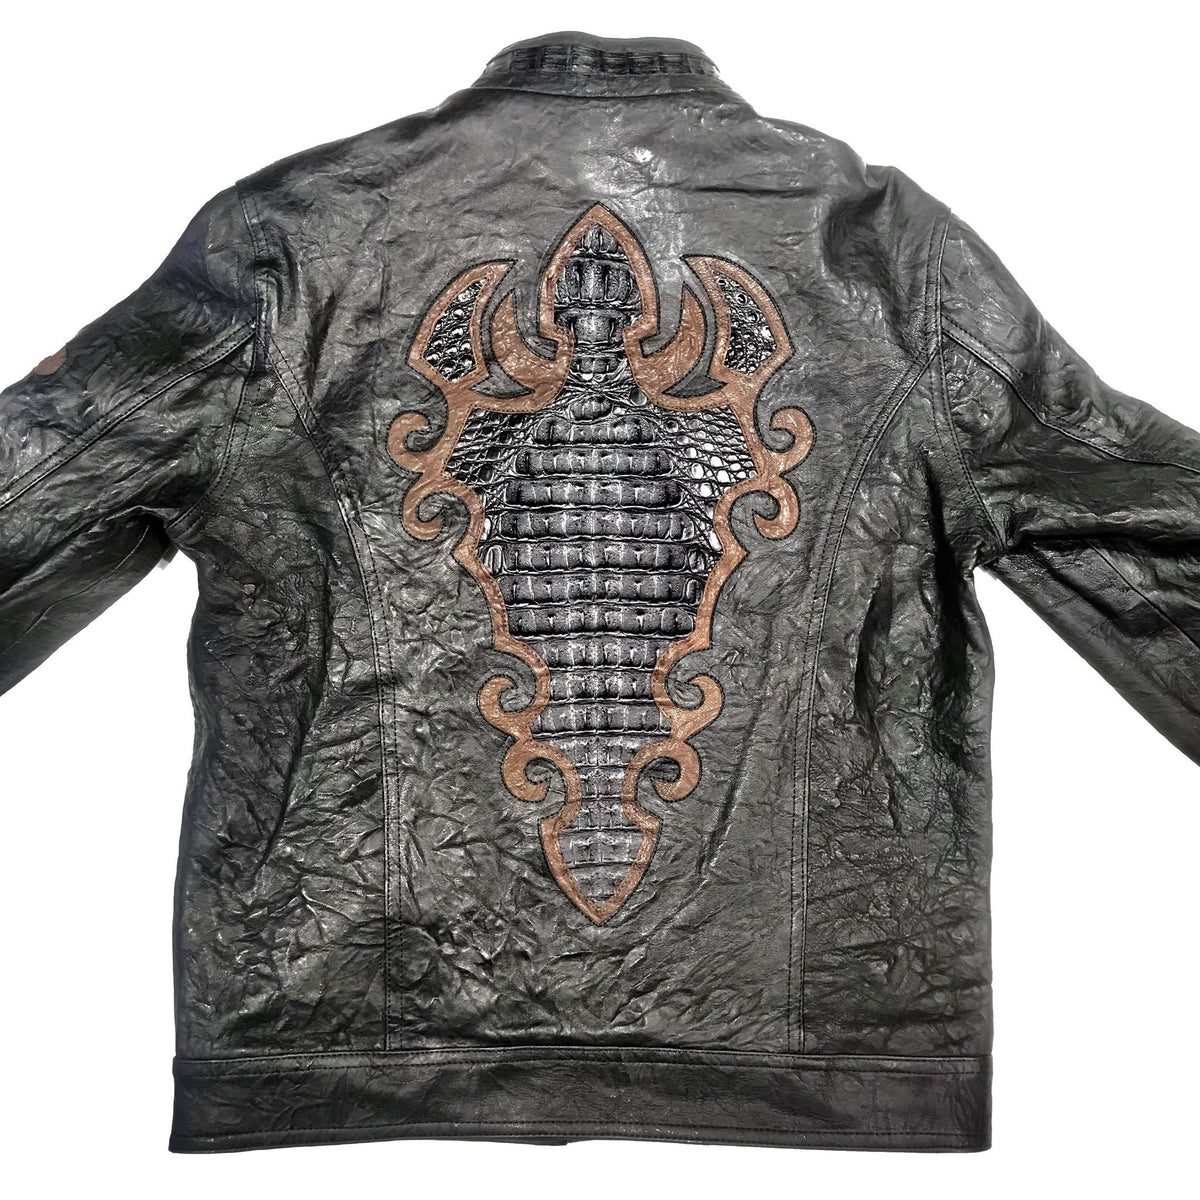 Icon Jacket, Crocodile Leather Jacket, Alligator Leather Jacket